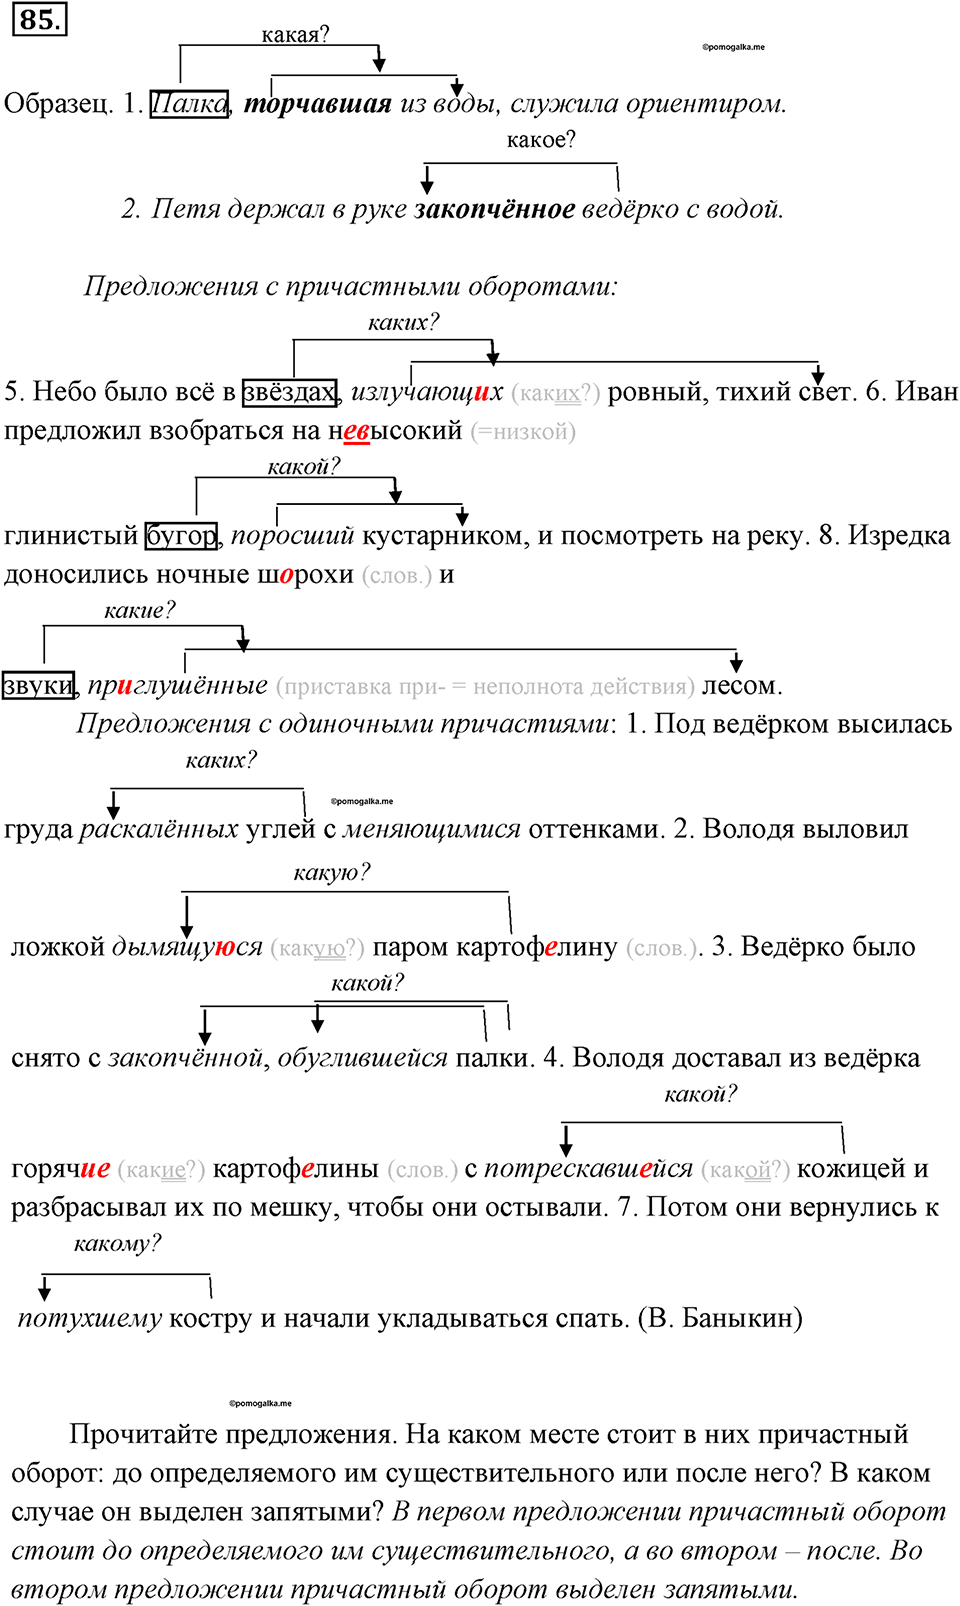 Русский язык 3 класс учебник Канакина, Горецкий 1 и 2 часть